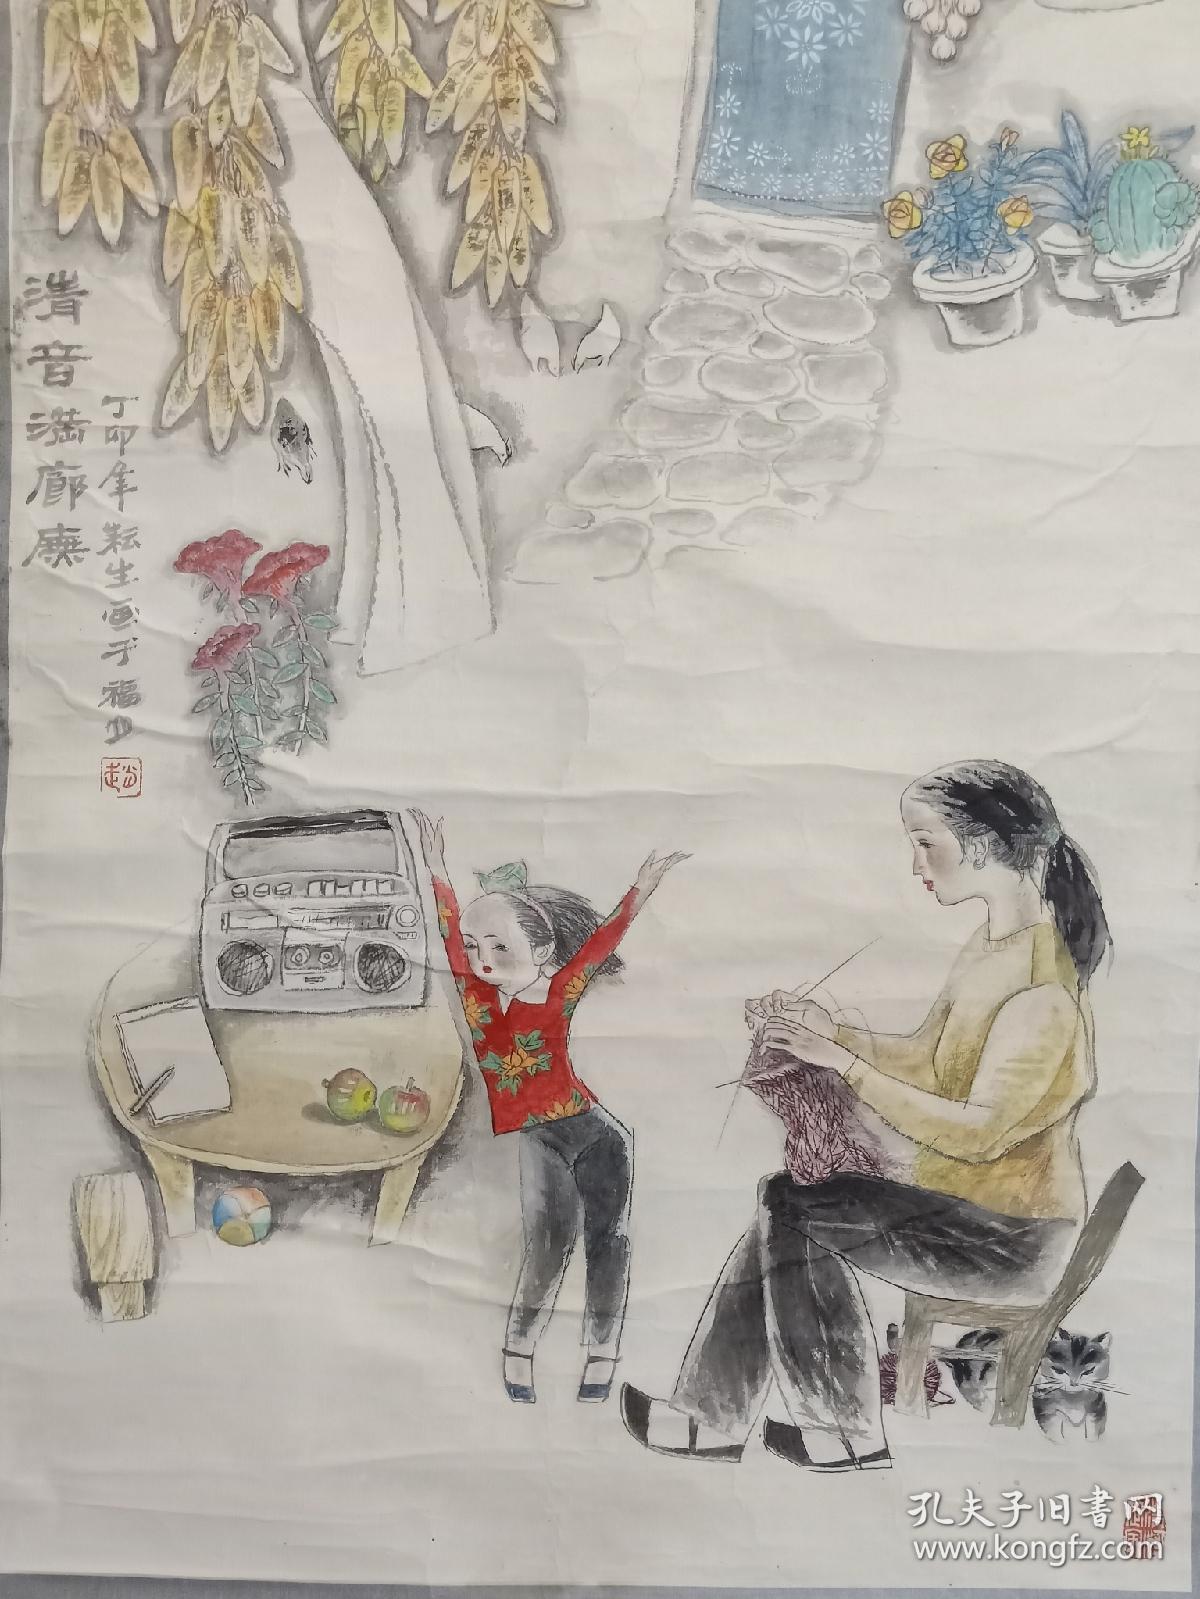 保真书画,画家赵耘生创作的一幅乡情浓郁